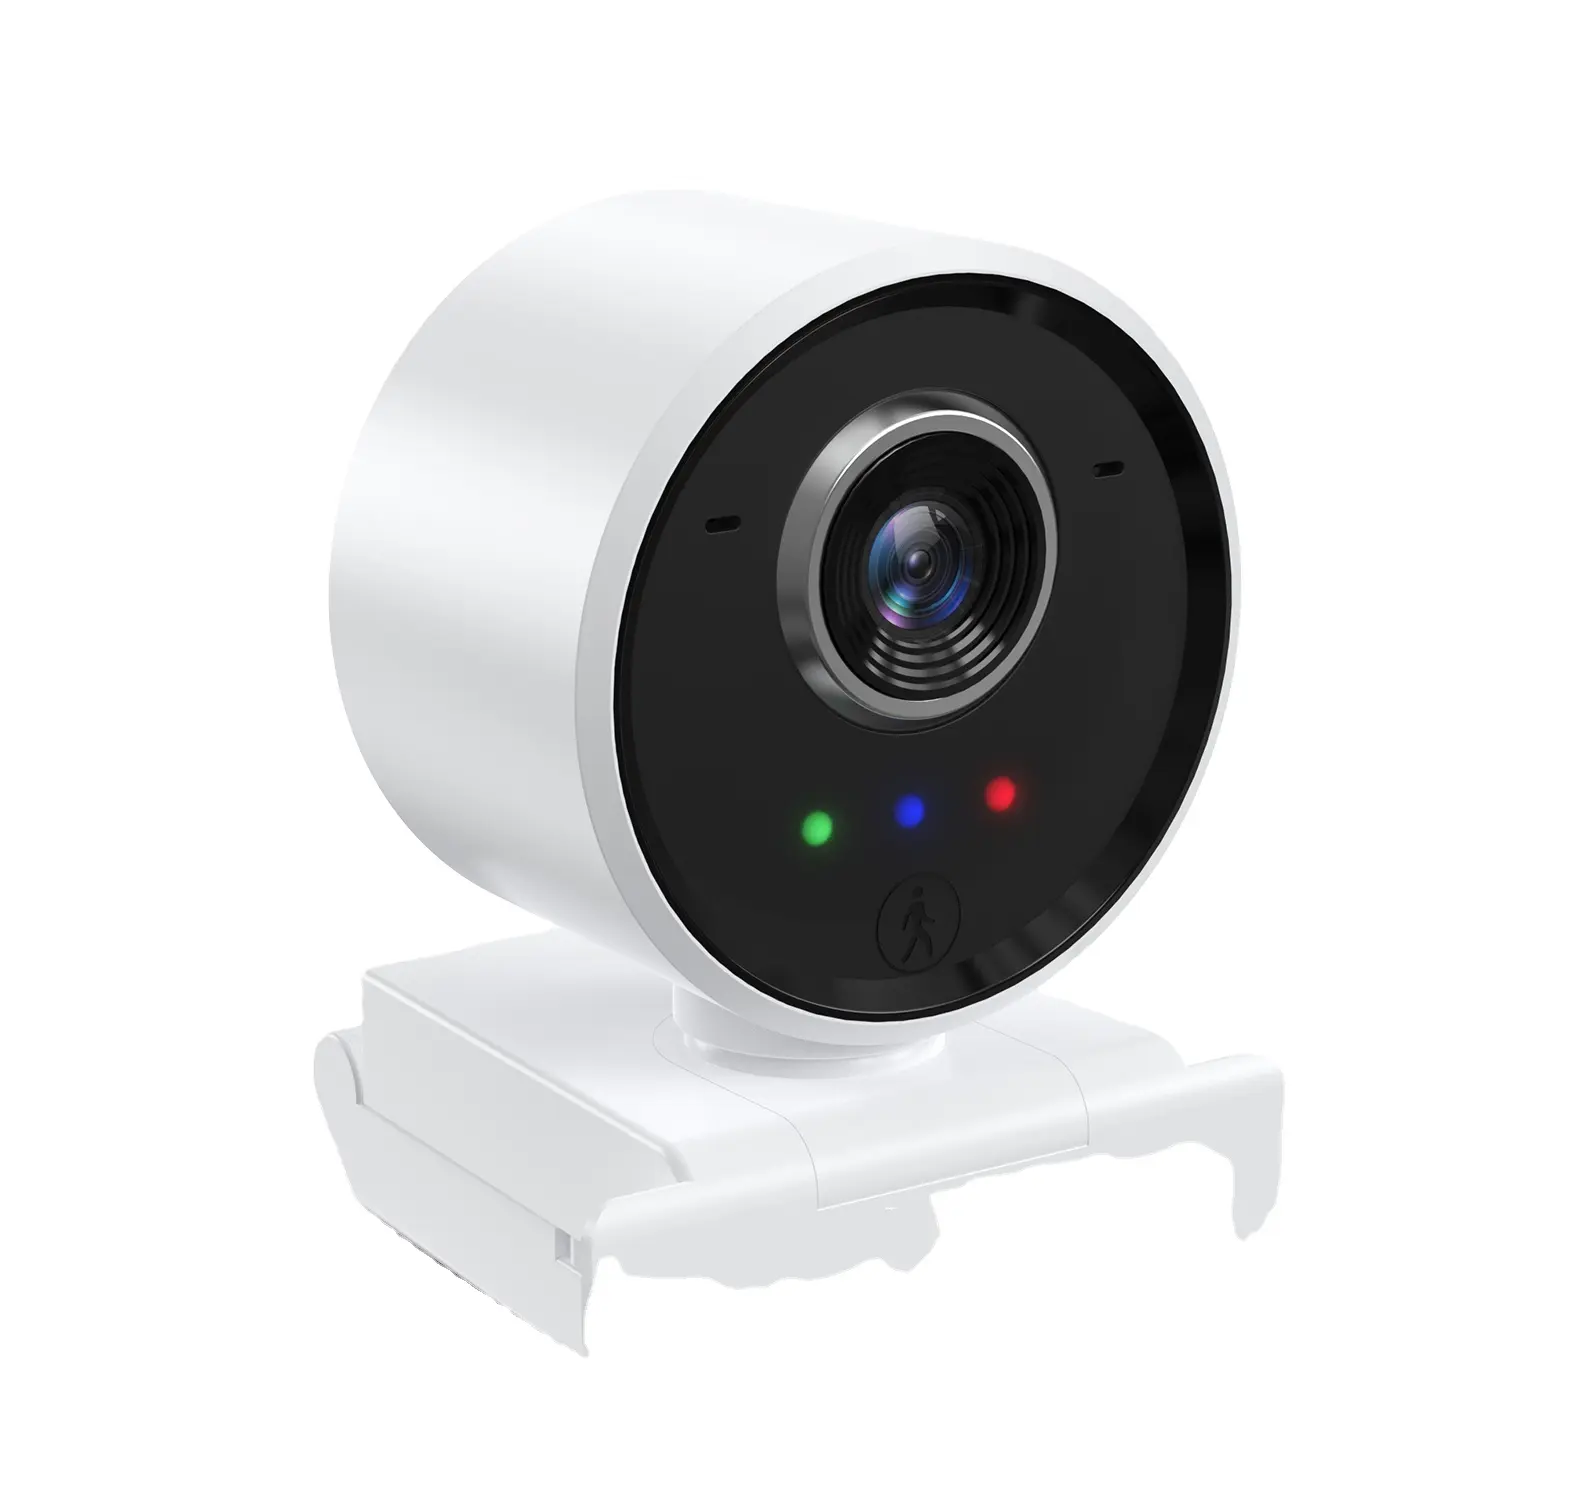 Innotronik-cámara Web serie 1080 de seguimiento humano, autoenfoque, compatible con varios Software de videoreunión con Control remoto